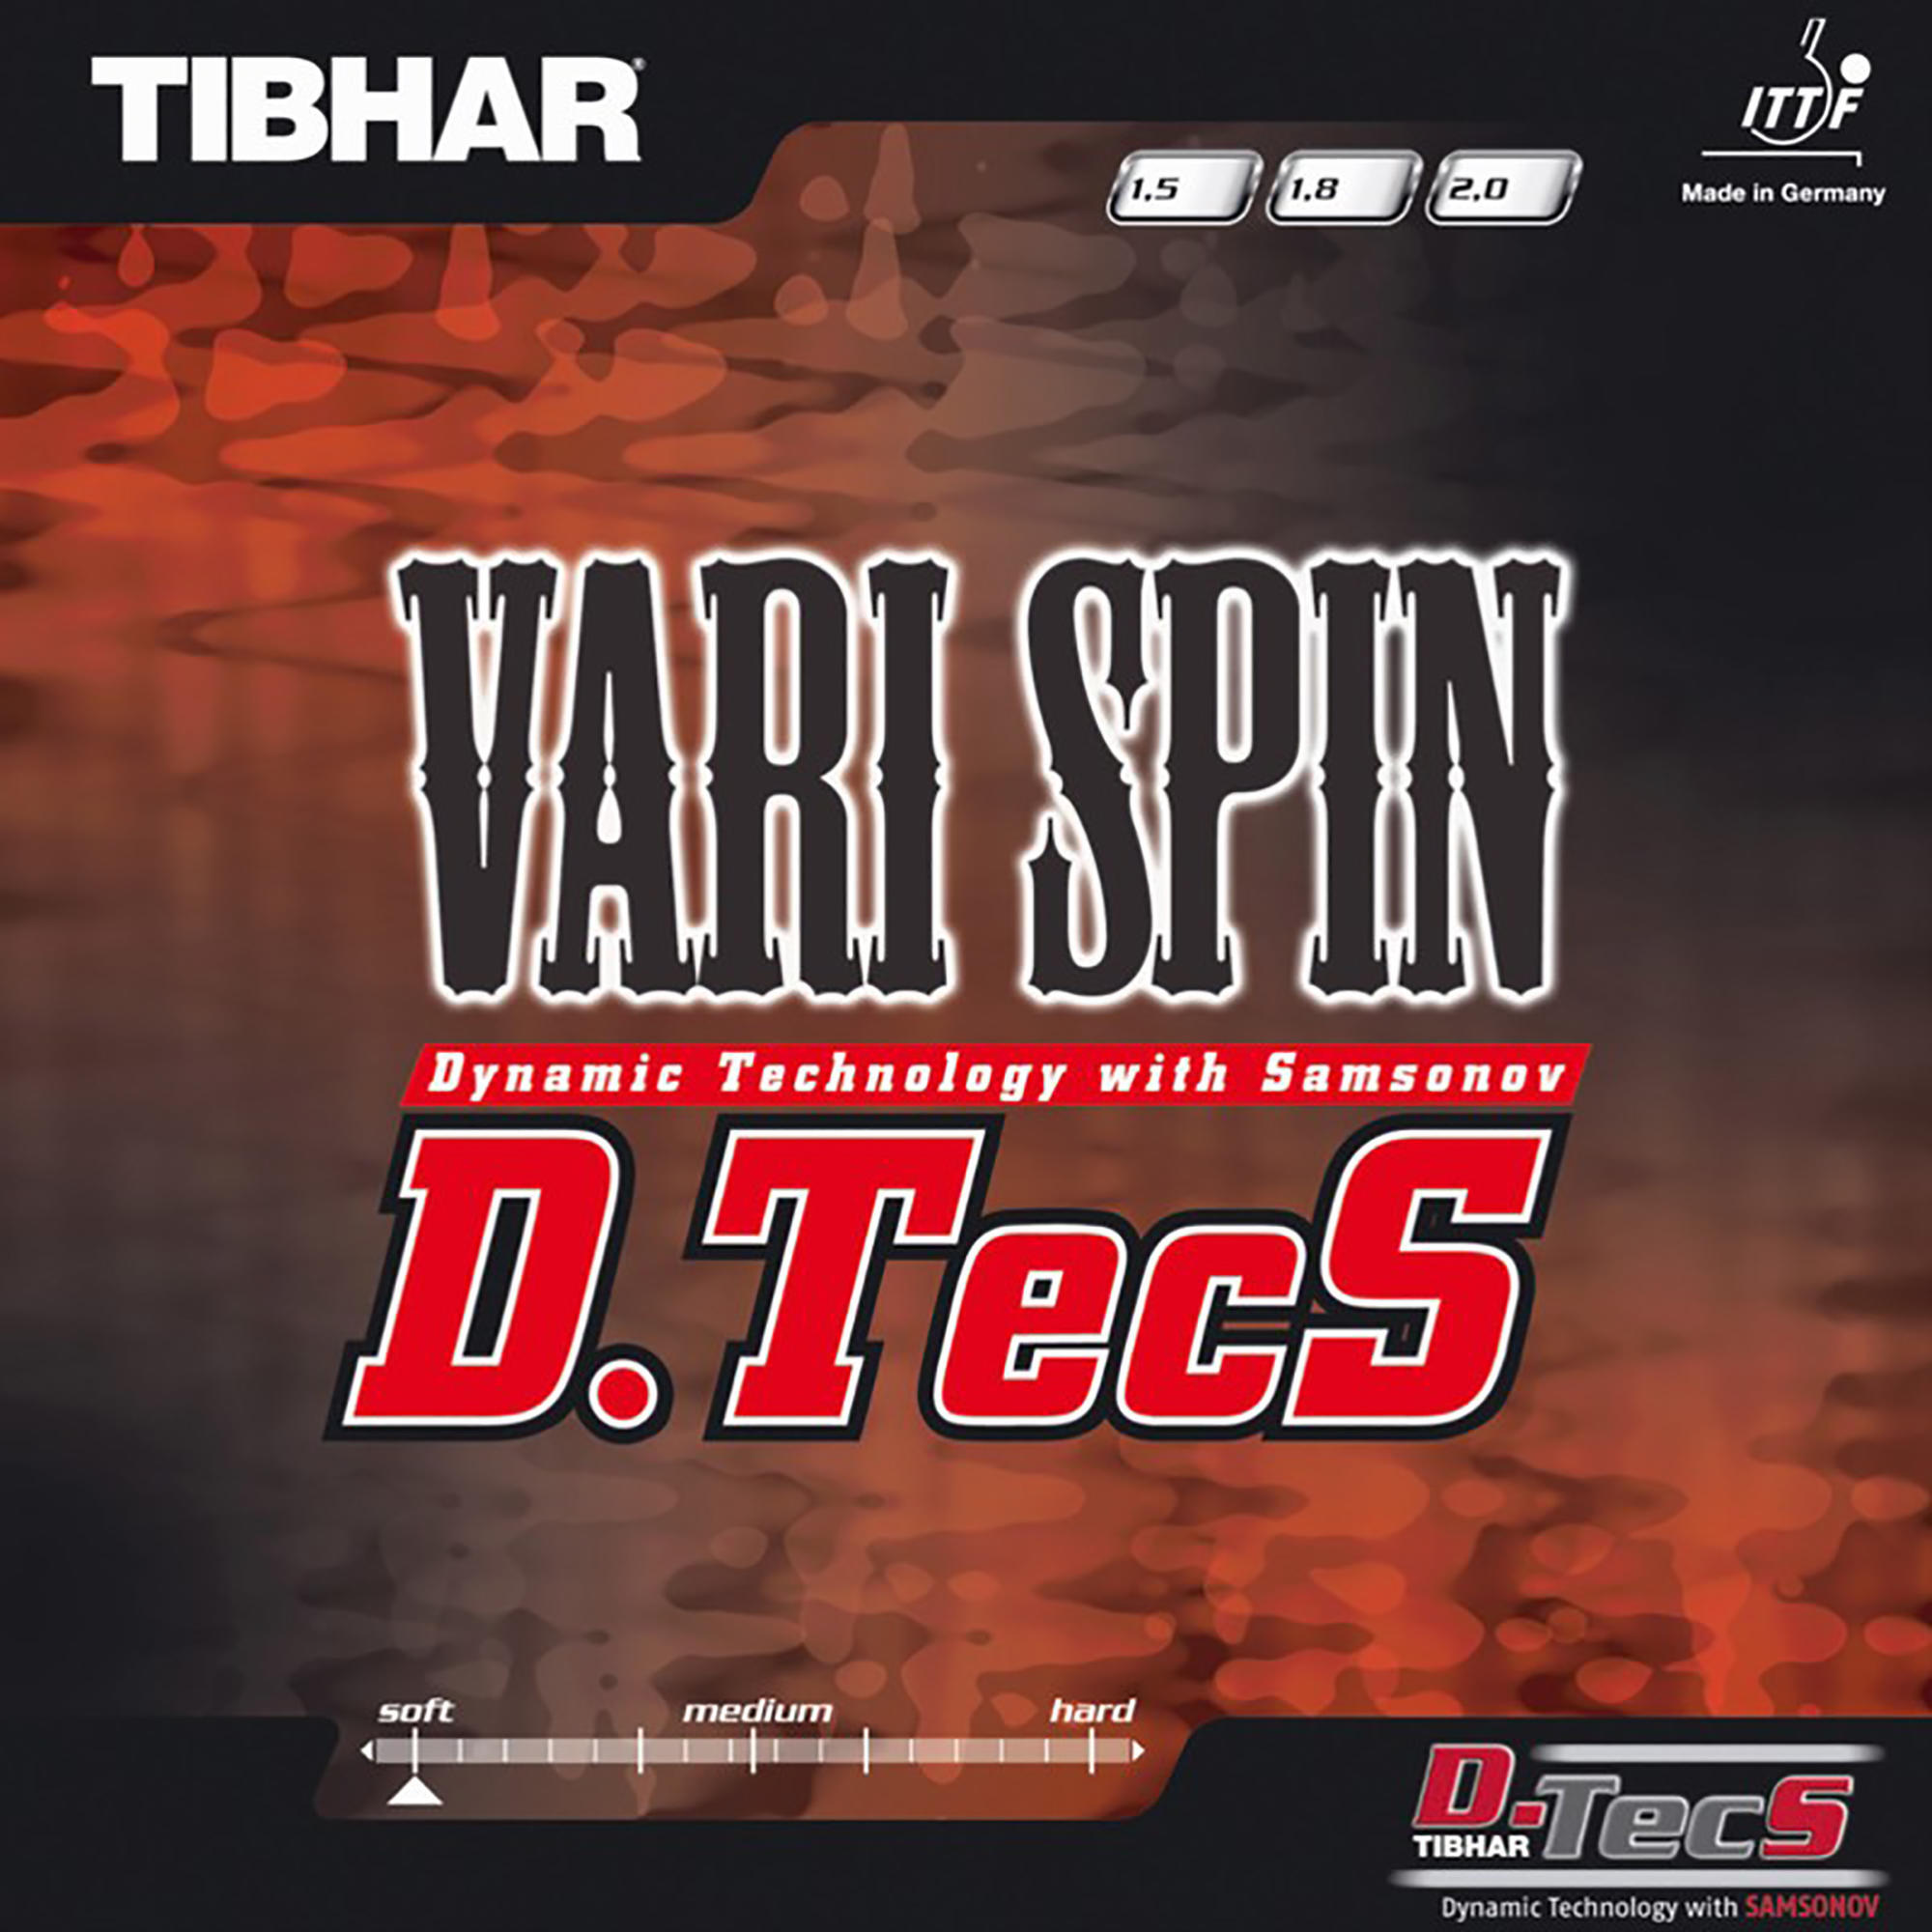 Накладка для настольного тенниса Vari Spin D.TecS TIBHAR tibhar aurus мягкая резиновая накладка для настольного тенниса германия